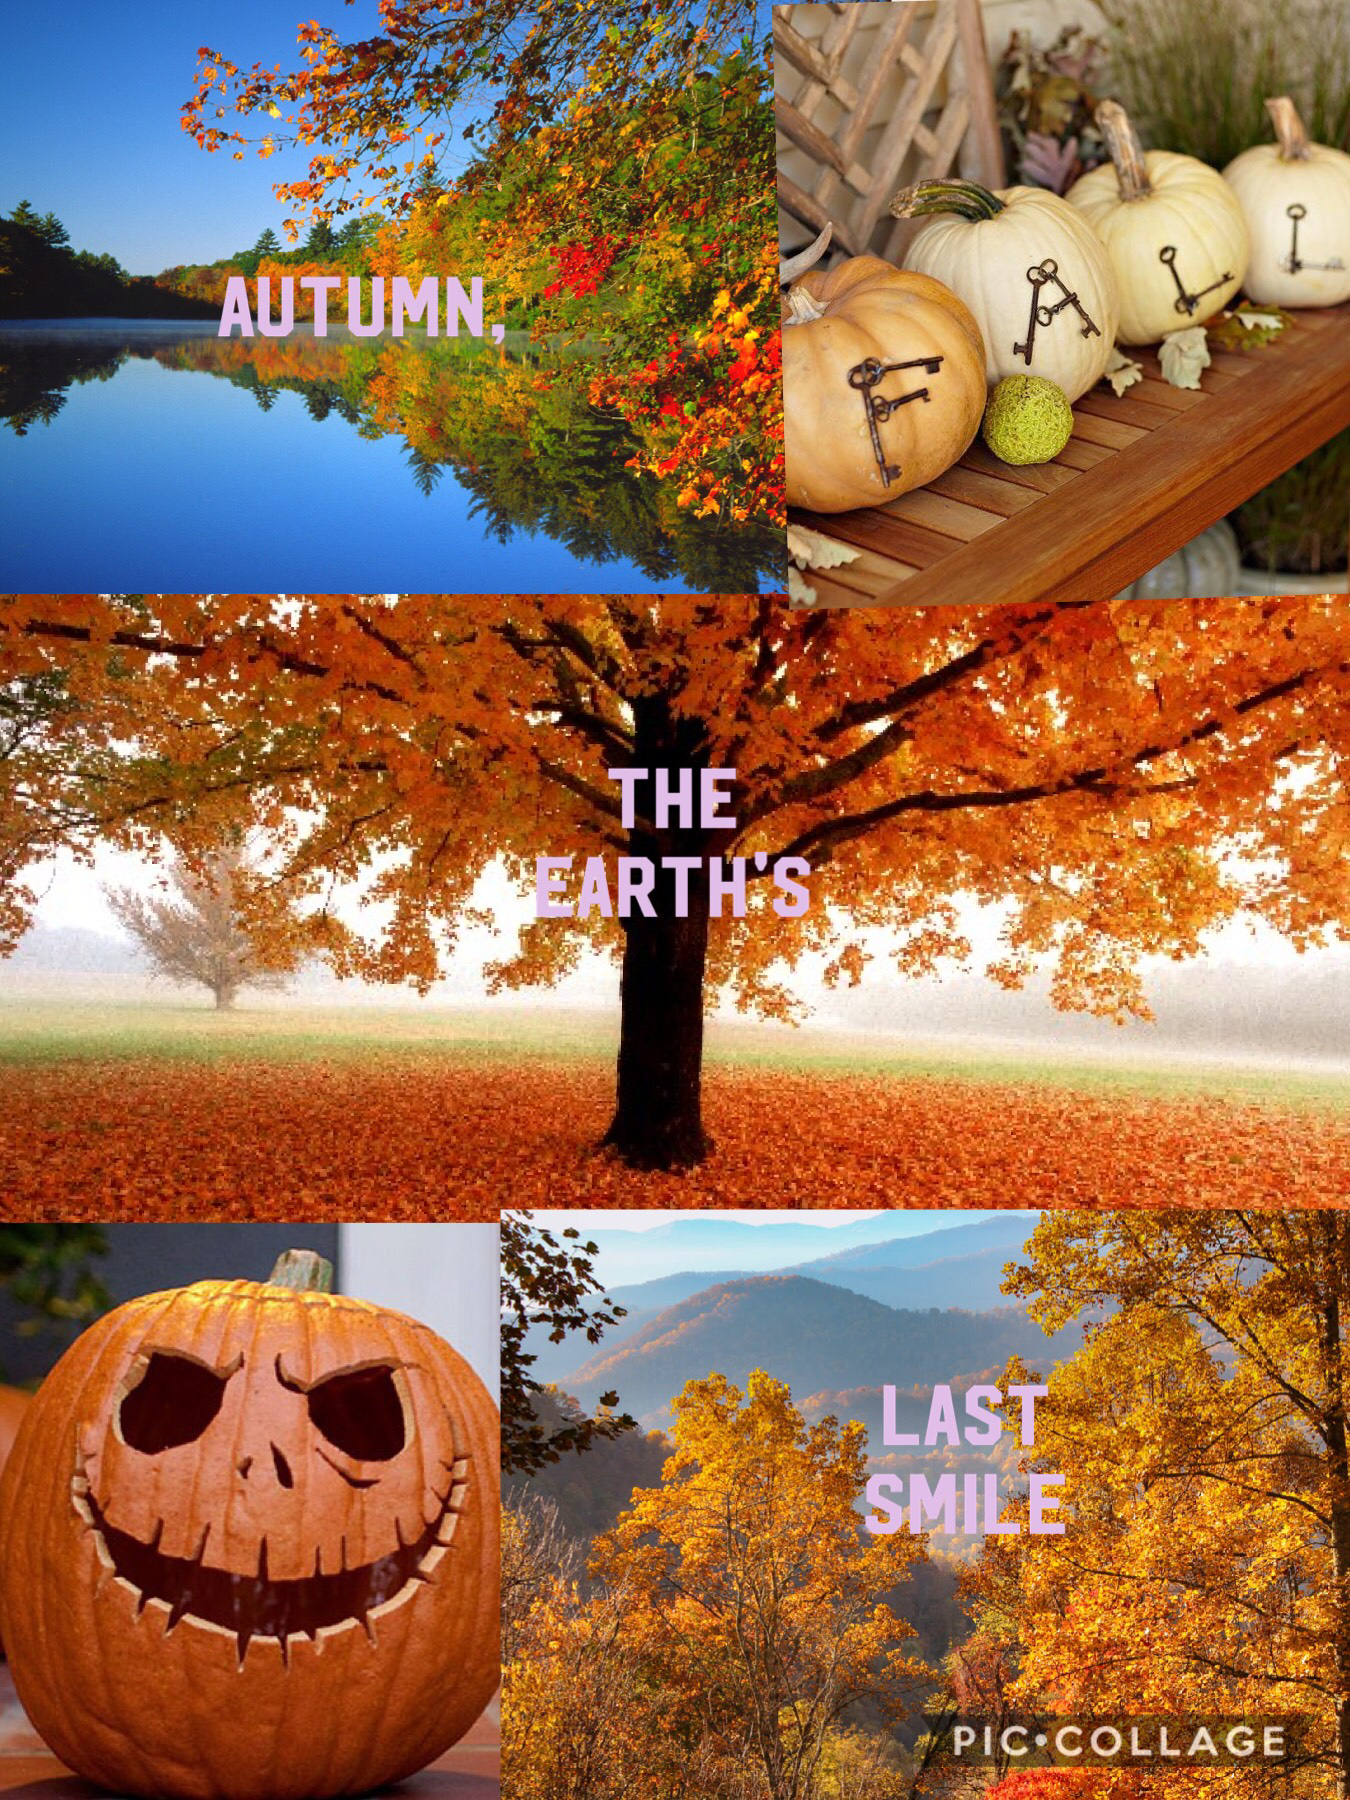 "Autumn, the earths last smile."